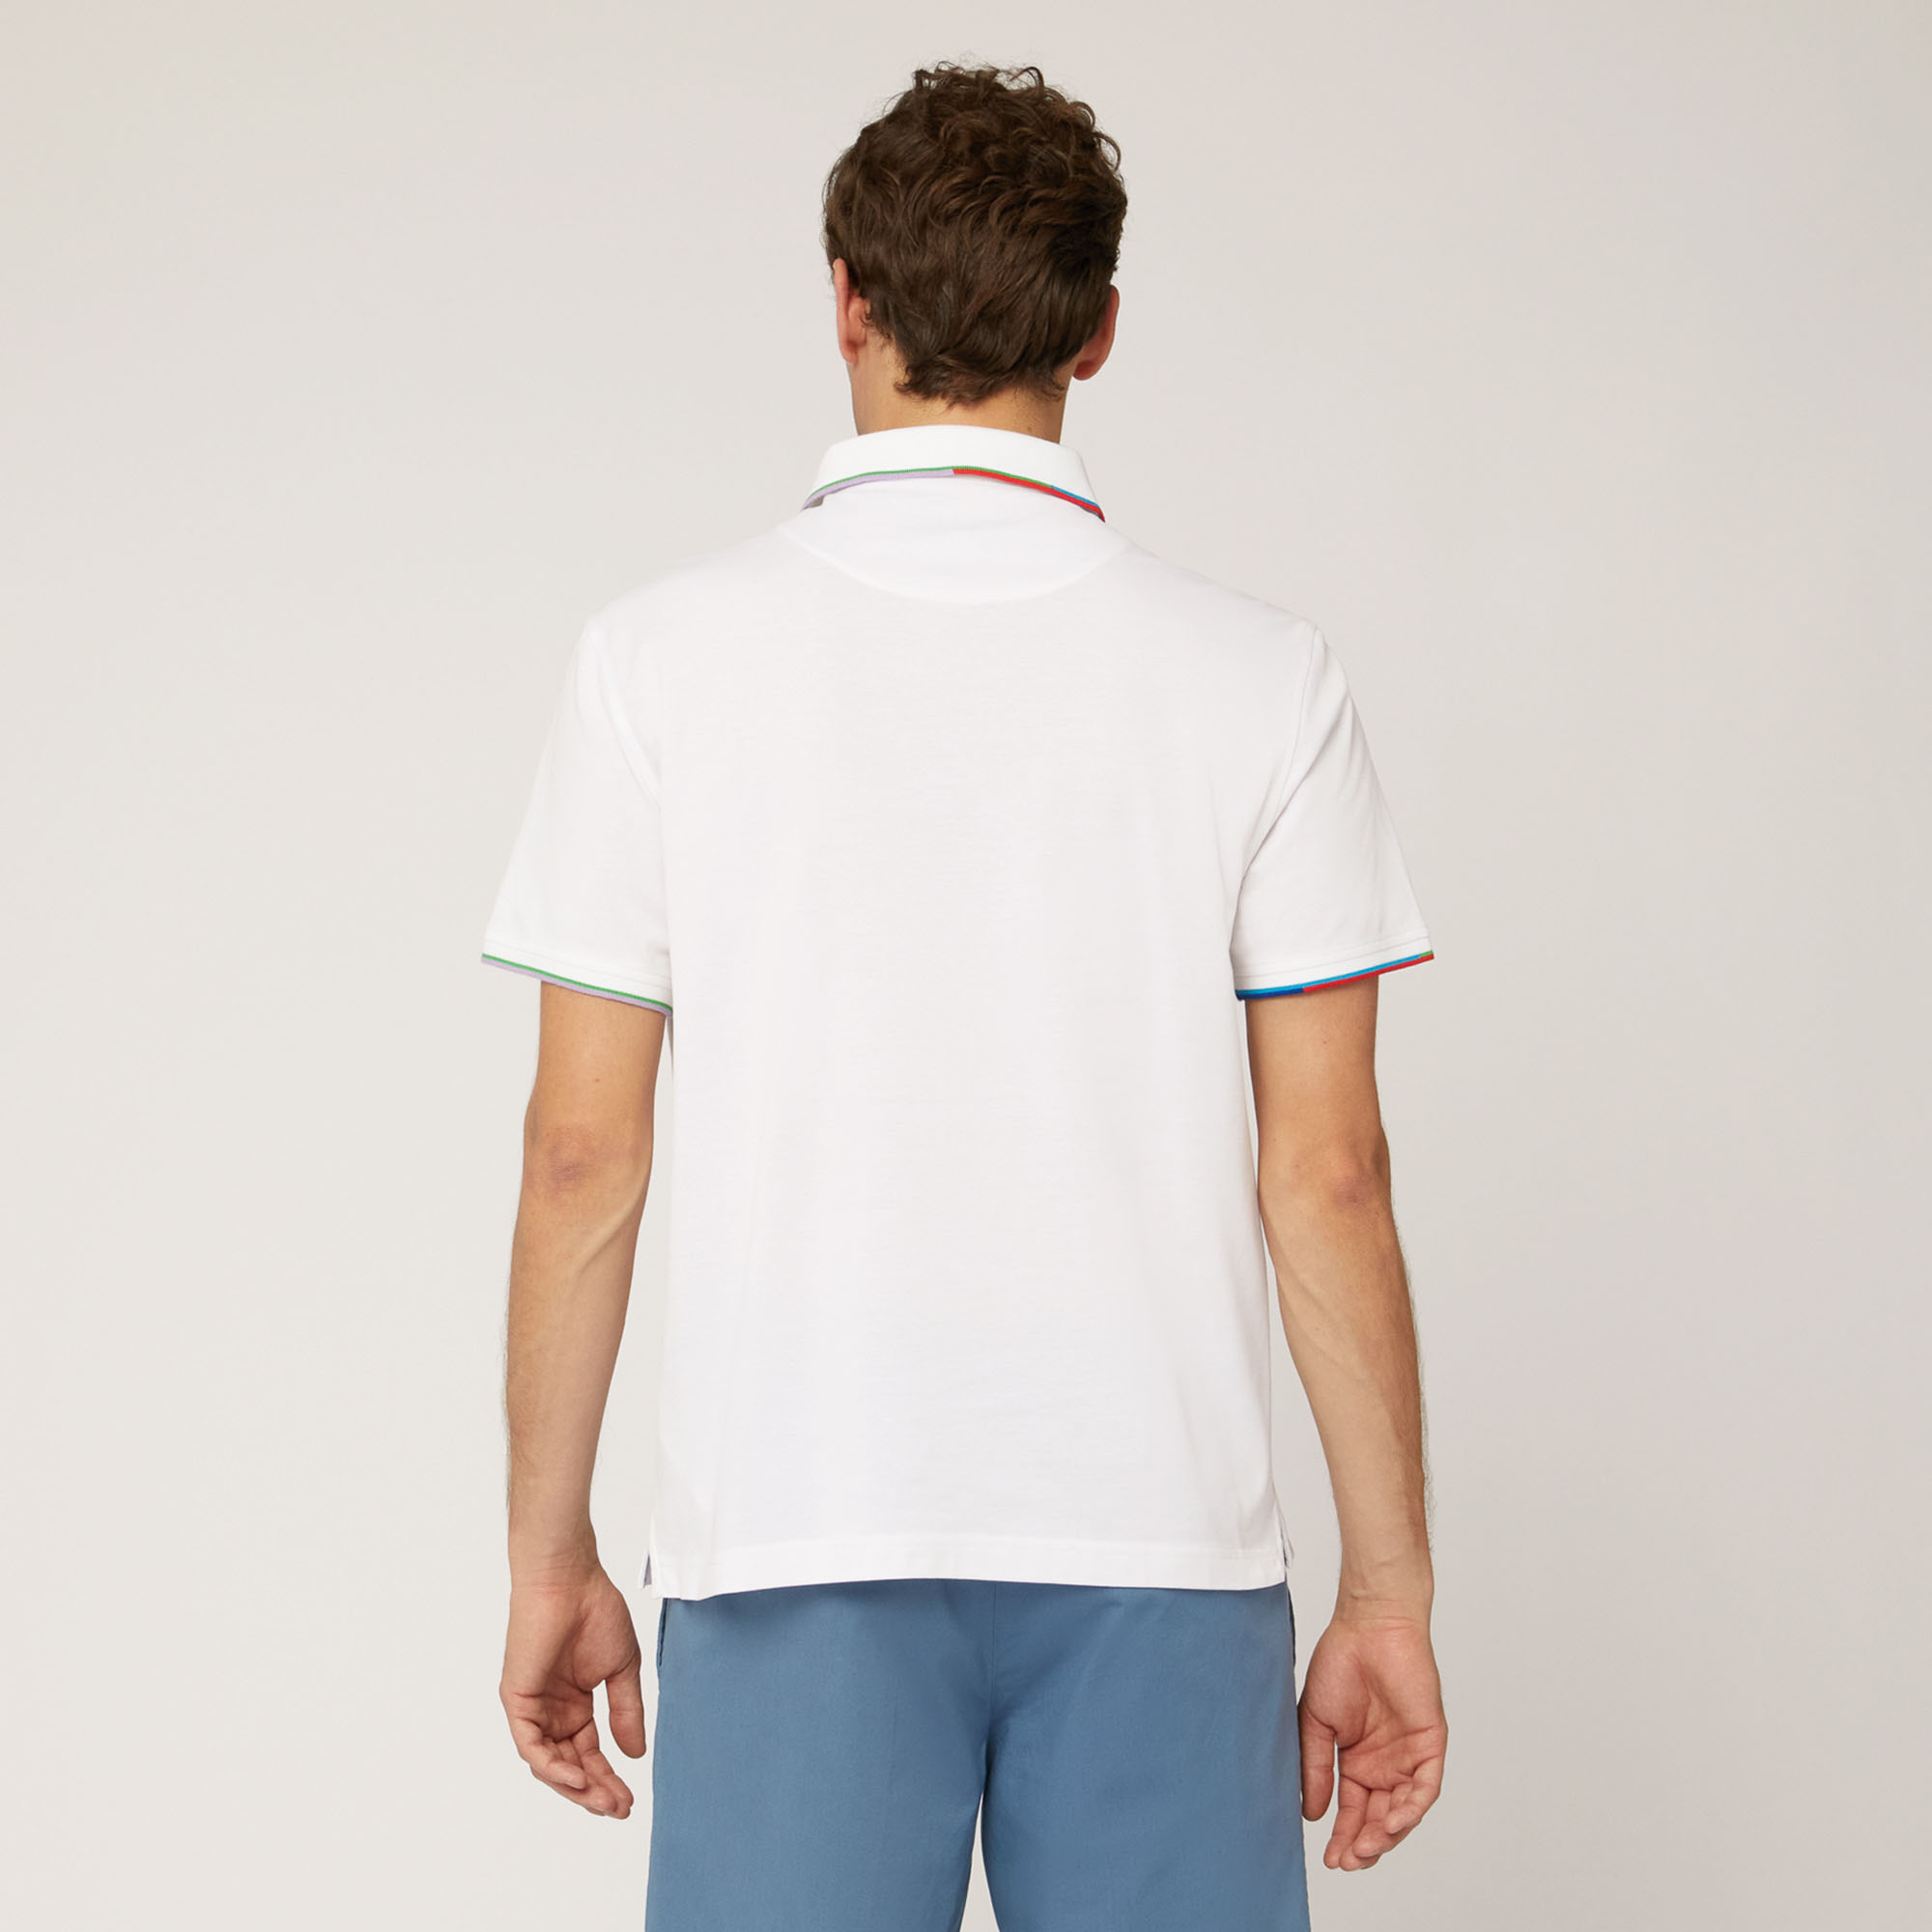 Poloshirt mit mehrfarbigen Details, Weiß, large image number 1